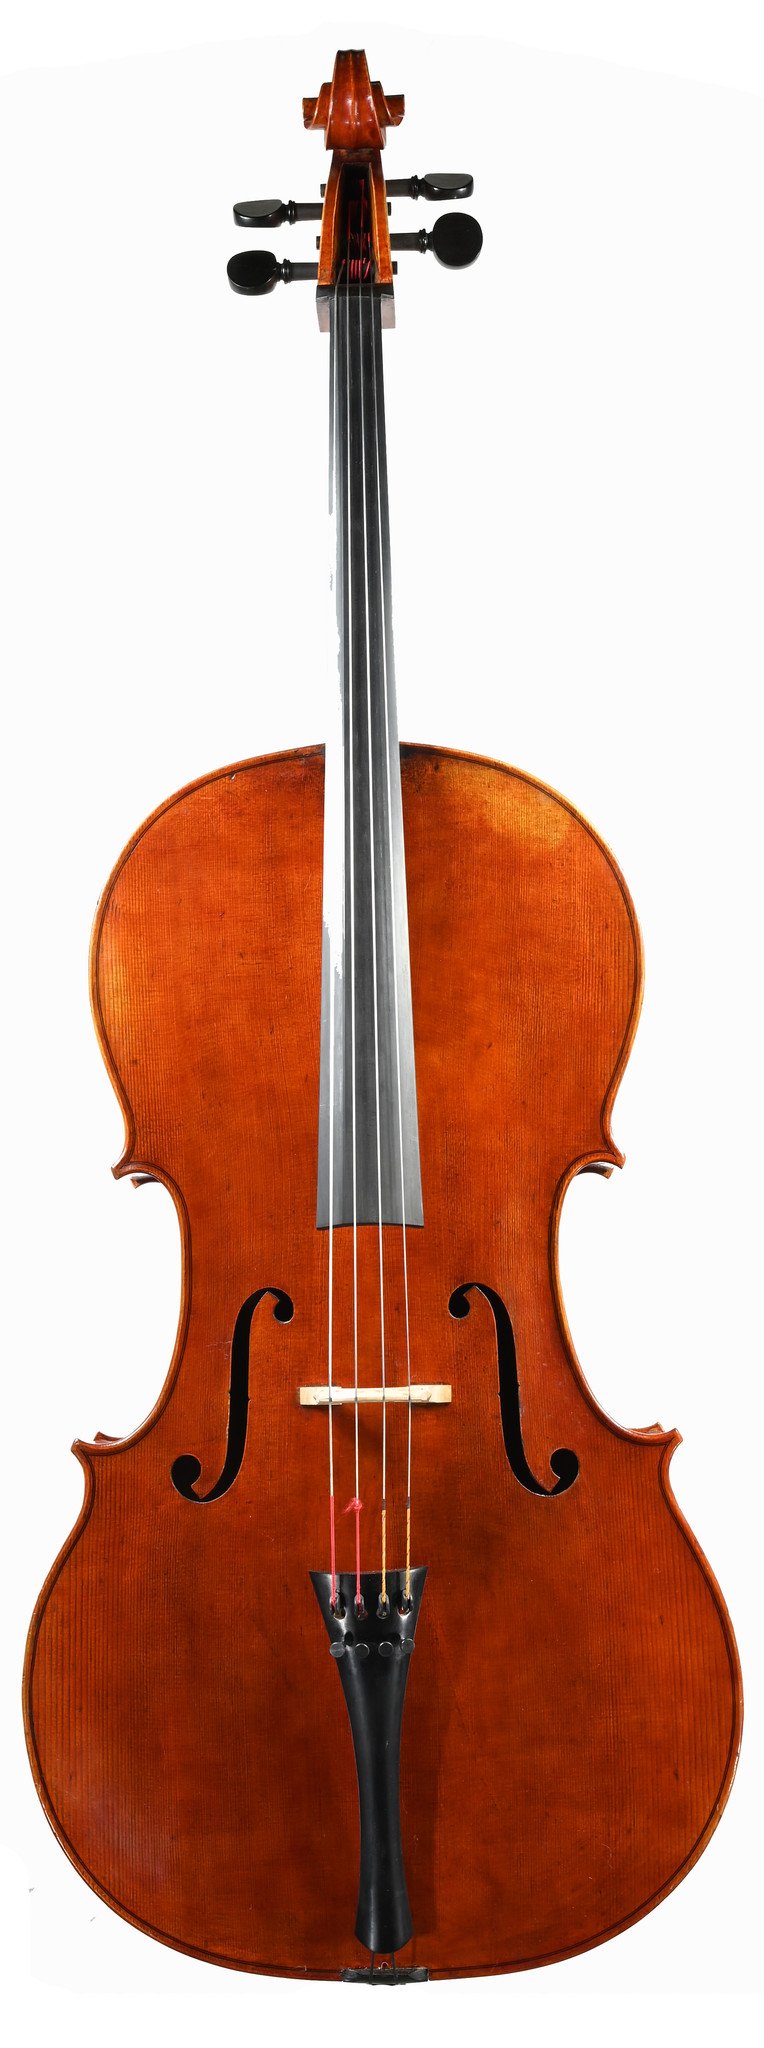 Beckmann 4/4 cello, Kansas City, MO, USA 2010 - Metzler Violin Shop